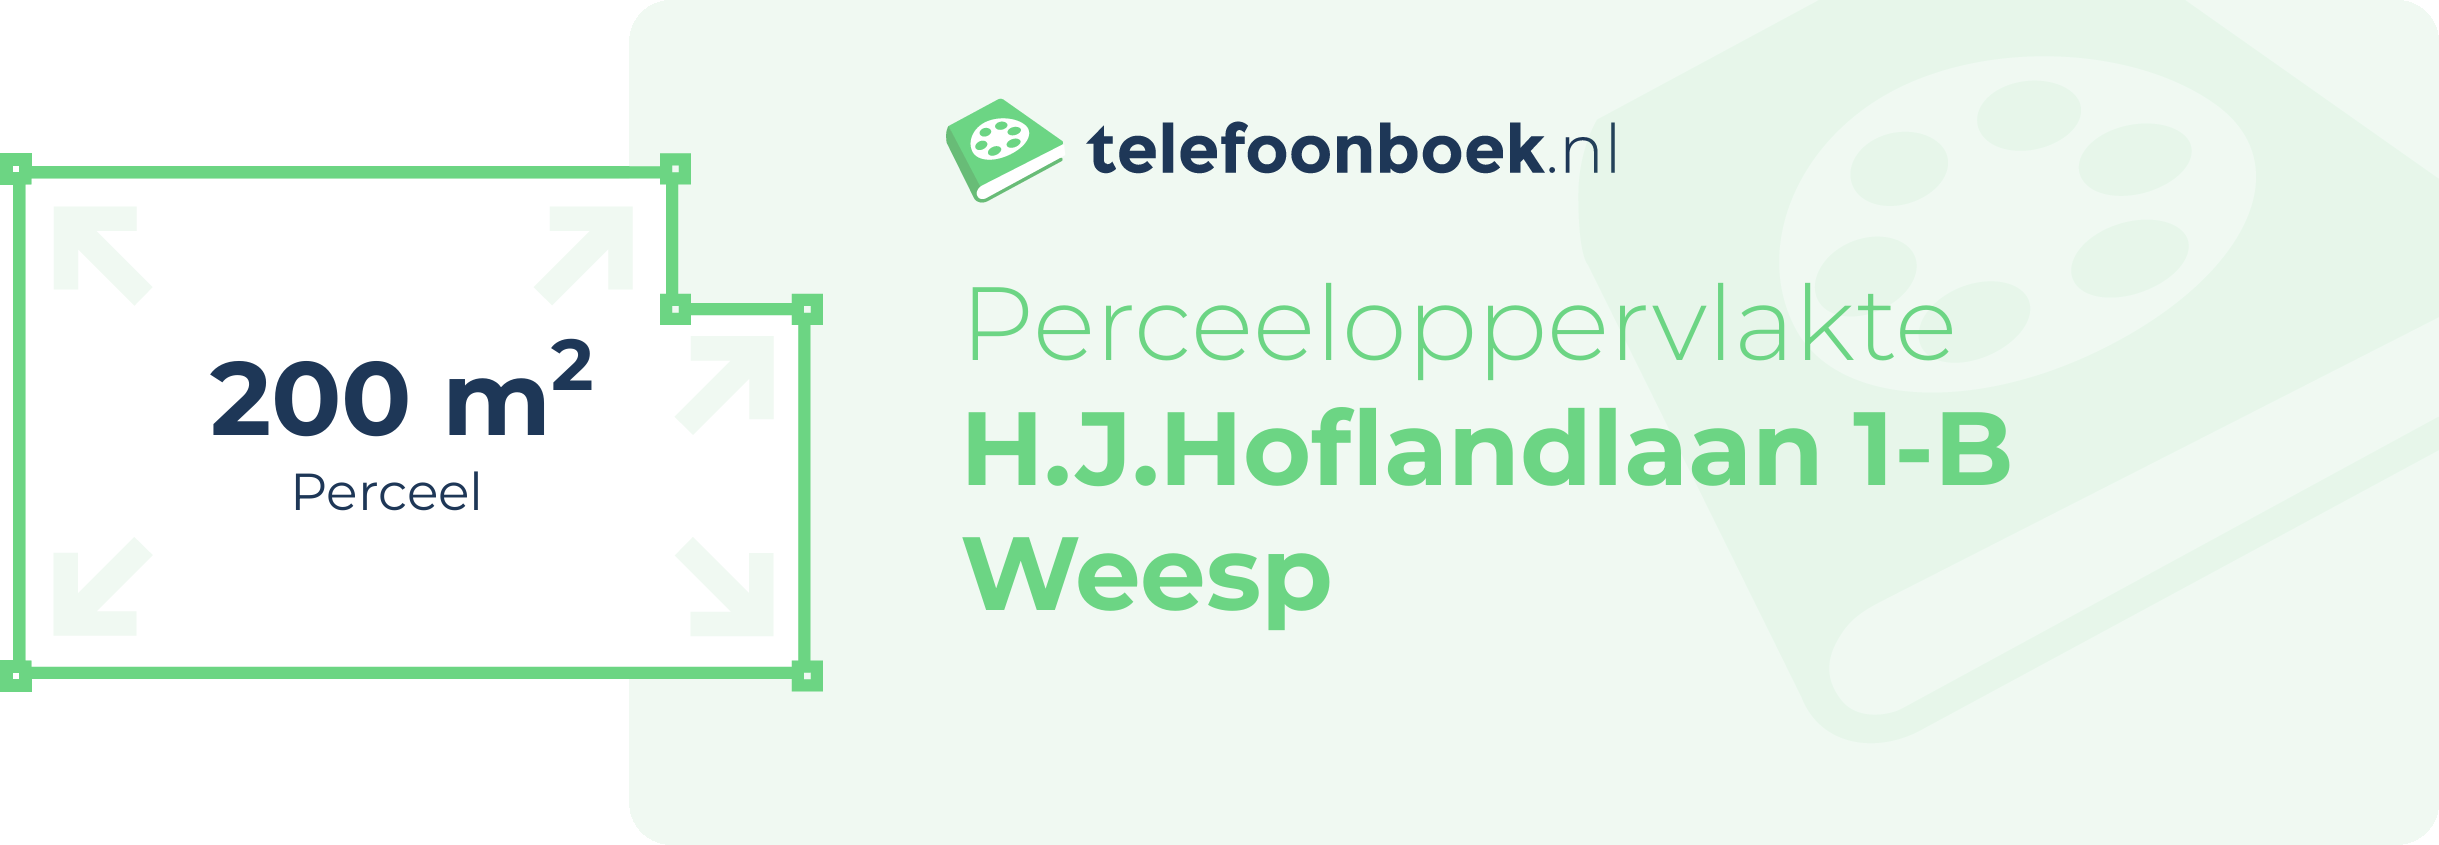 Perceeloppervlakte H.J.Hoflandlaan 1-B Weesp